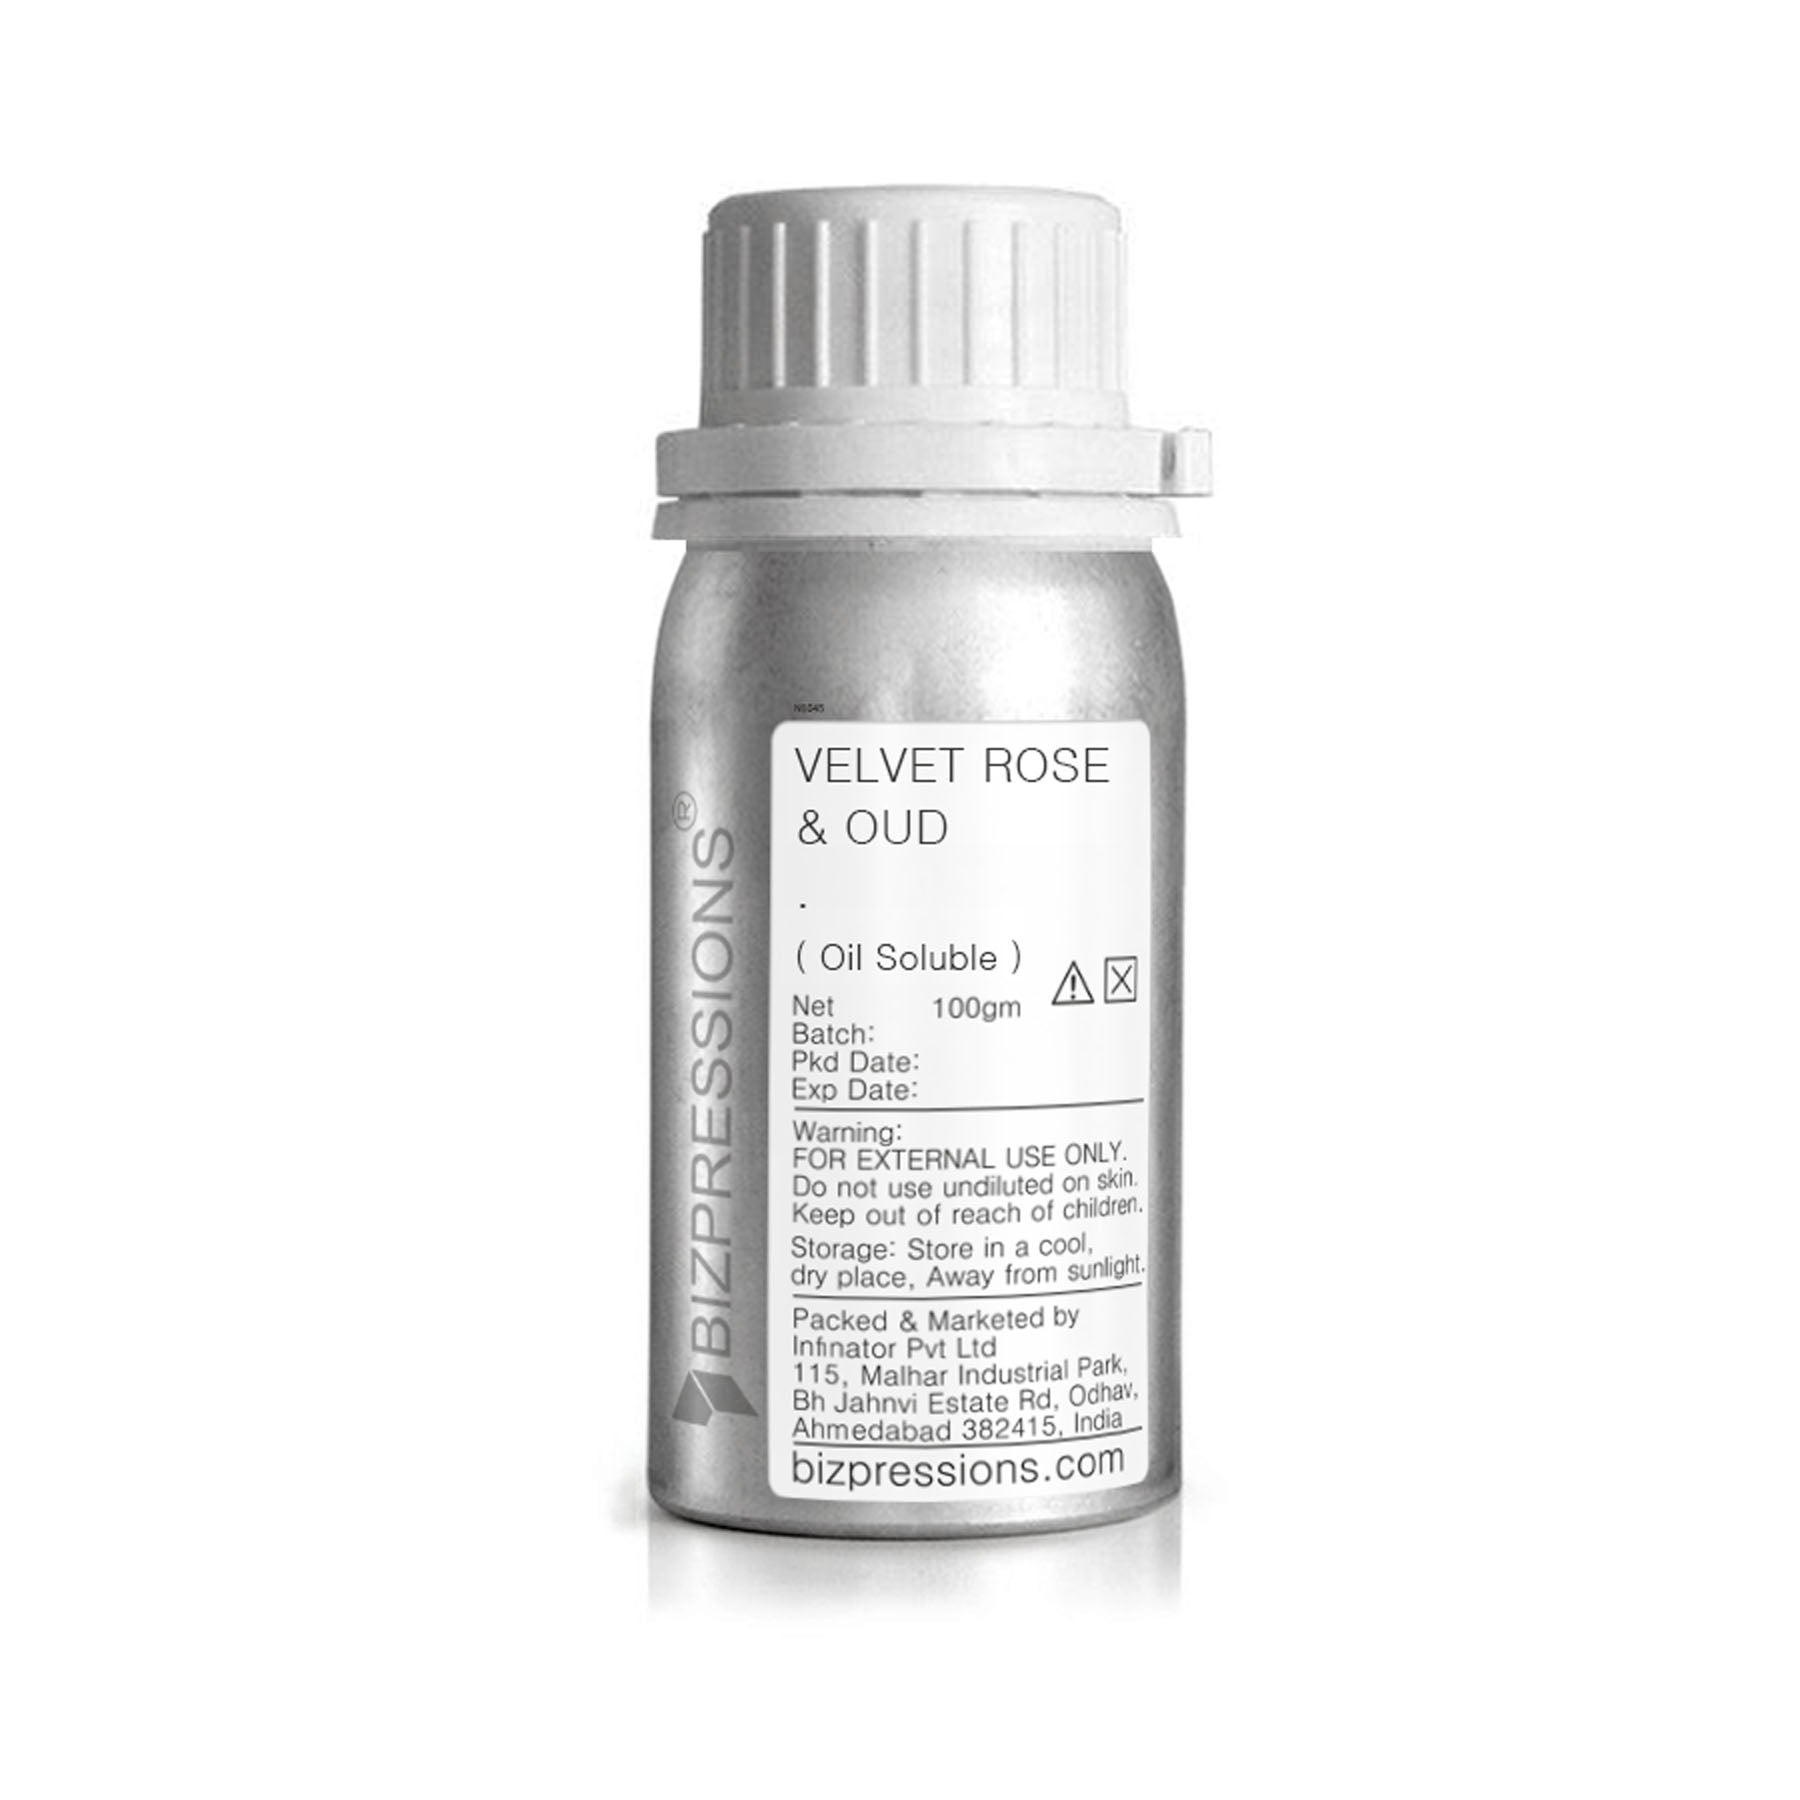 VELVET ROSE & OUD - Fragrance ( Oil Soluble ) - 100 gm